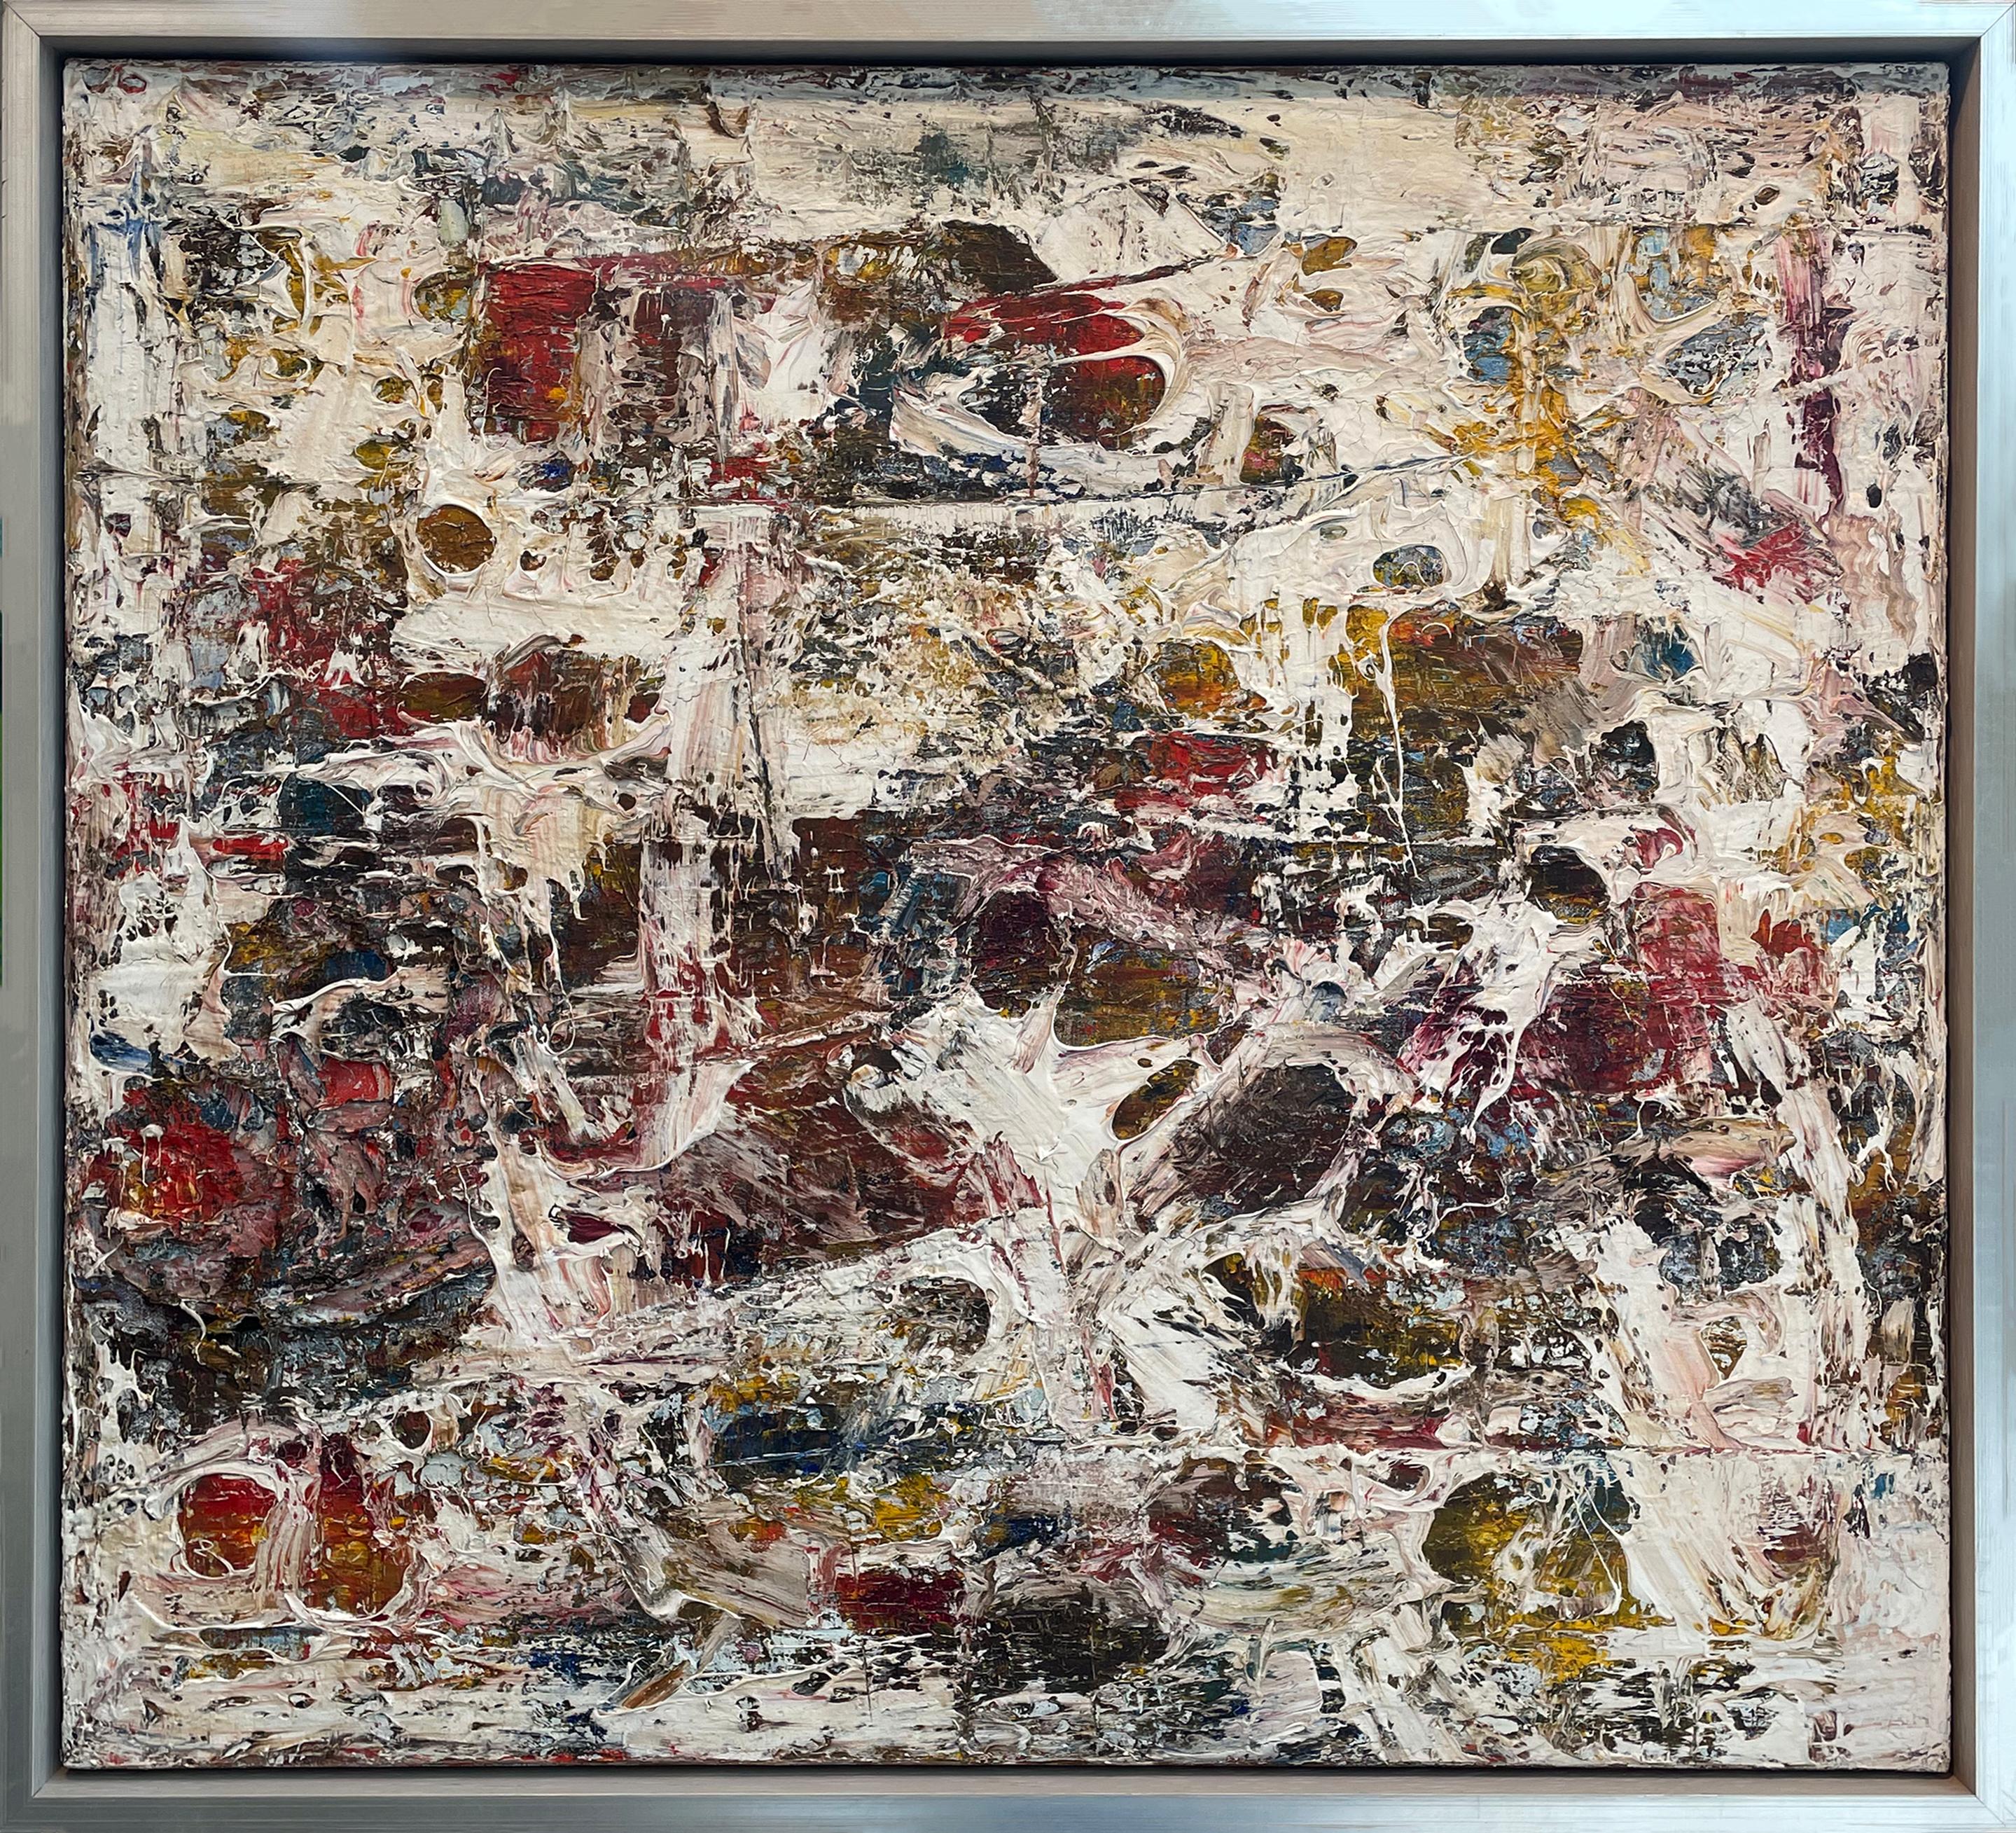 Abstract Painting Stanley Bate - Peinture abstraite moderne des années 1960, sans titre n°144